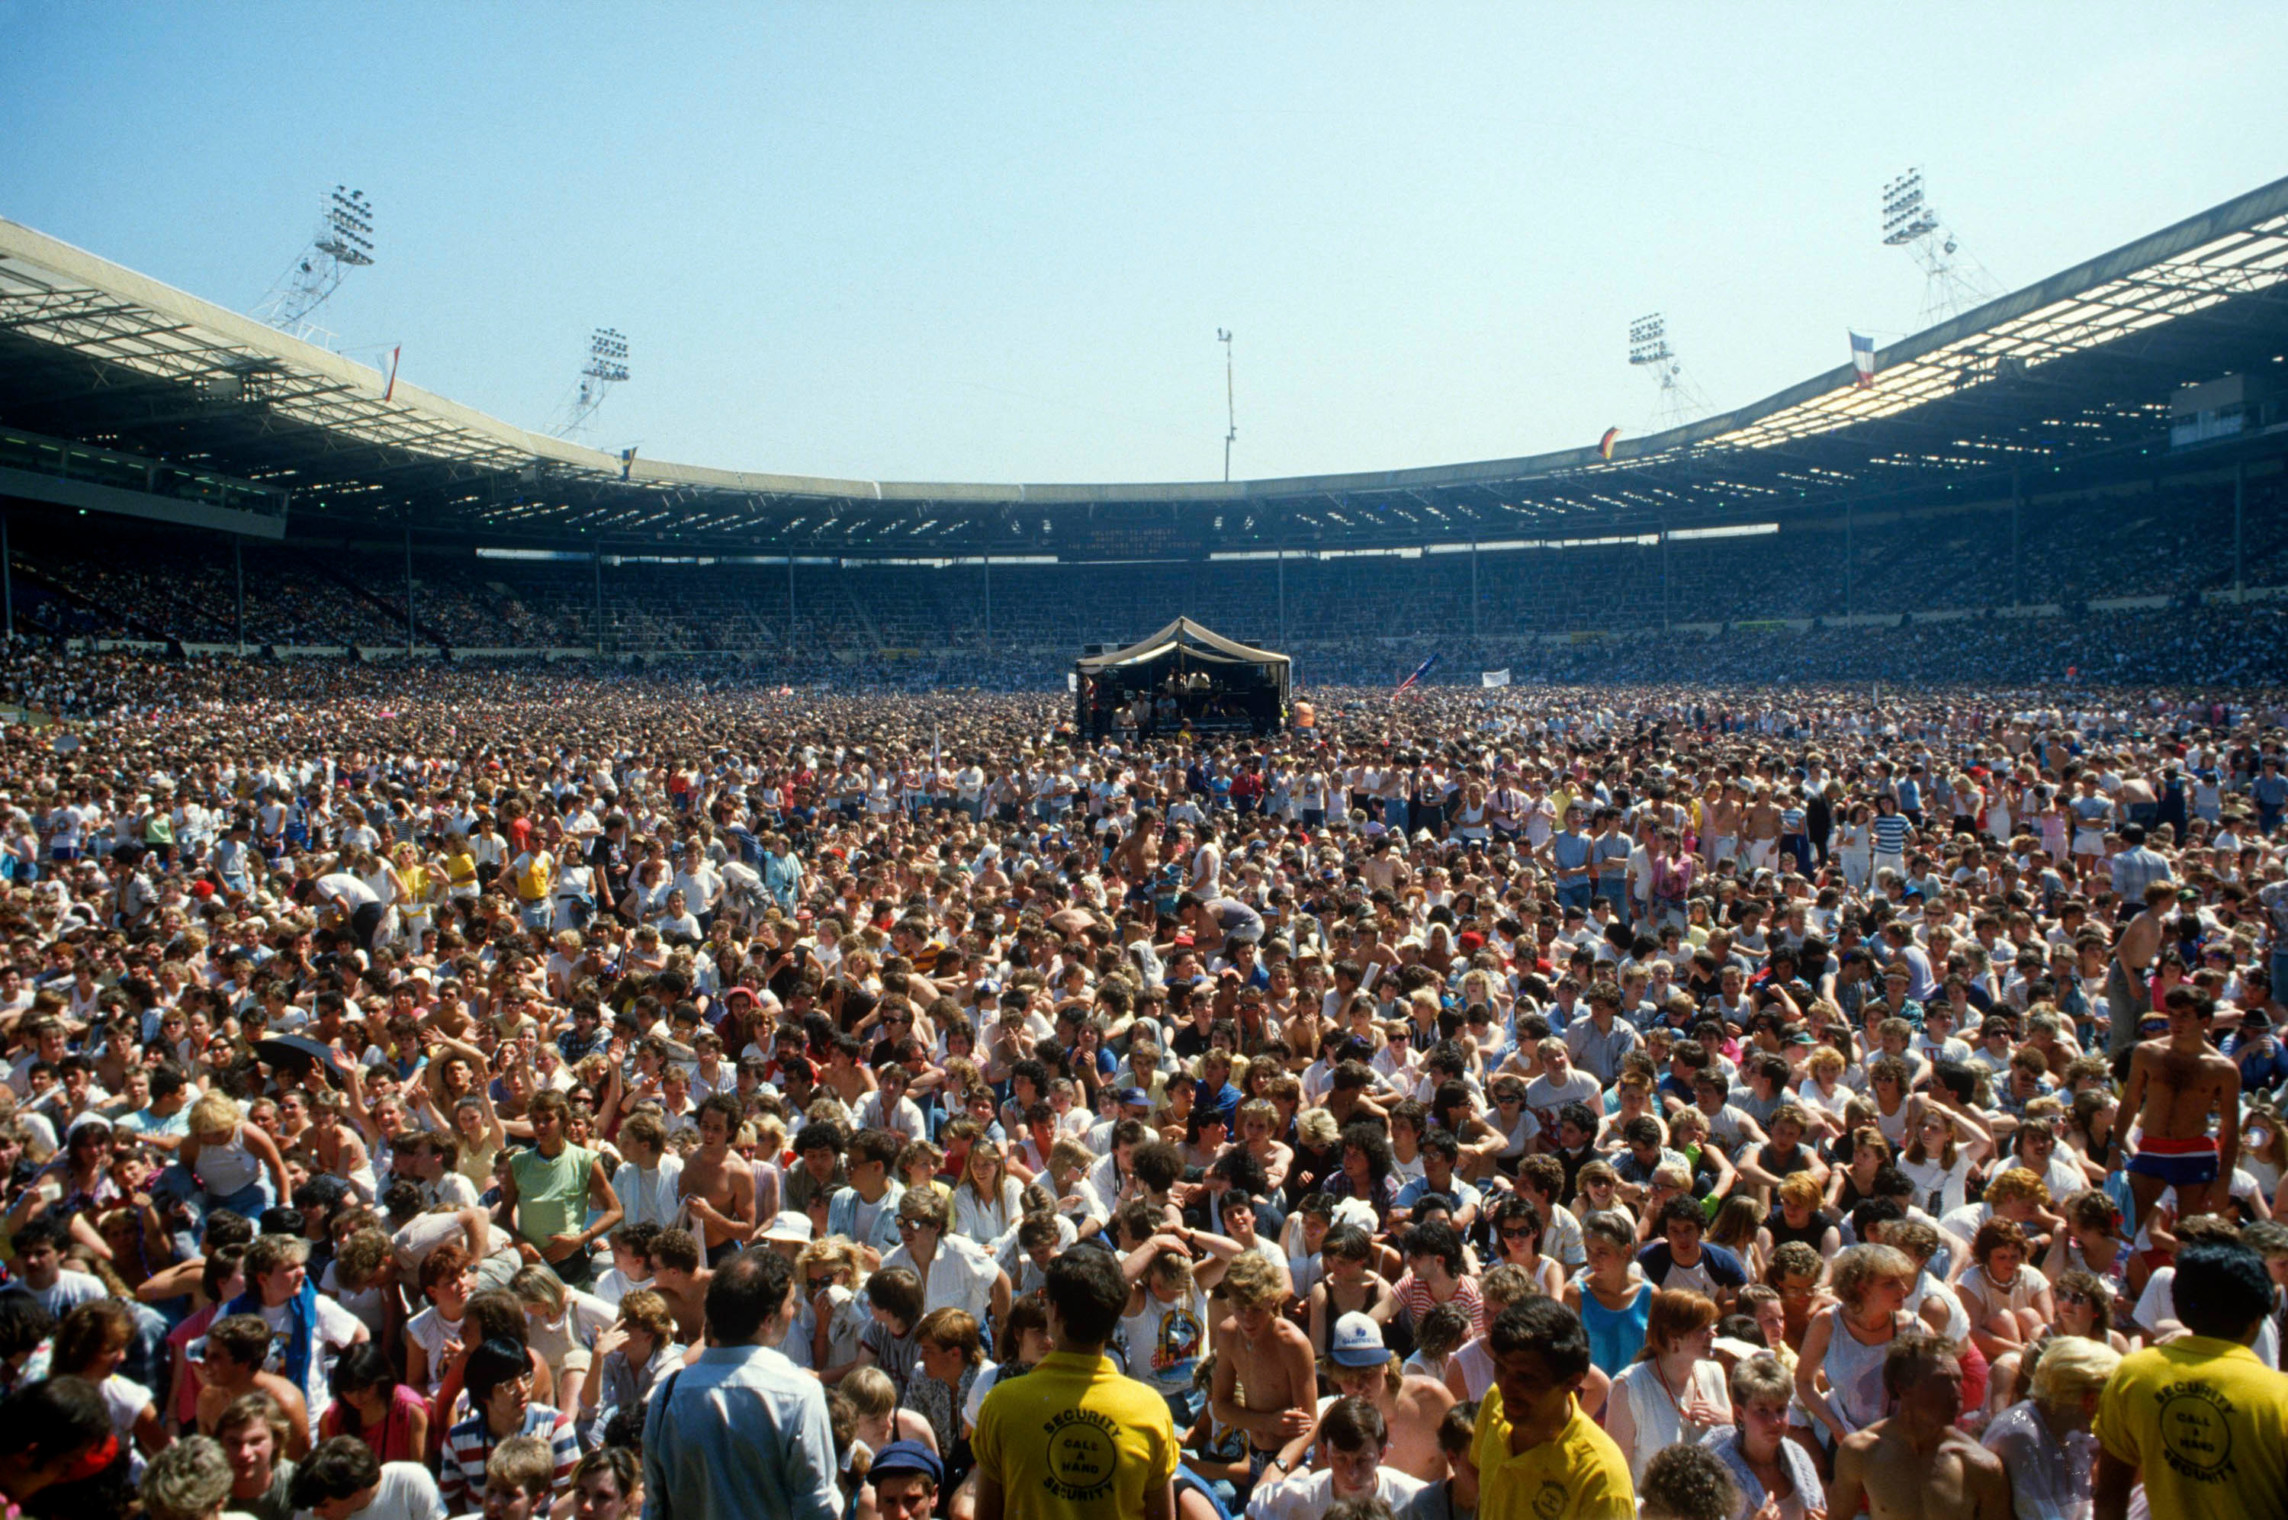 Квин стадион. Концерт на Уэмбли 1985. Live Aid стадион Уэмбли. Queen Wembley 1985 концерт. Live Aid 1985 Wembley.